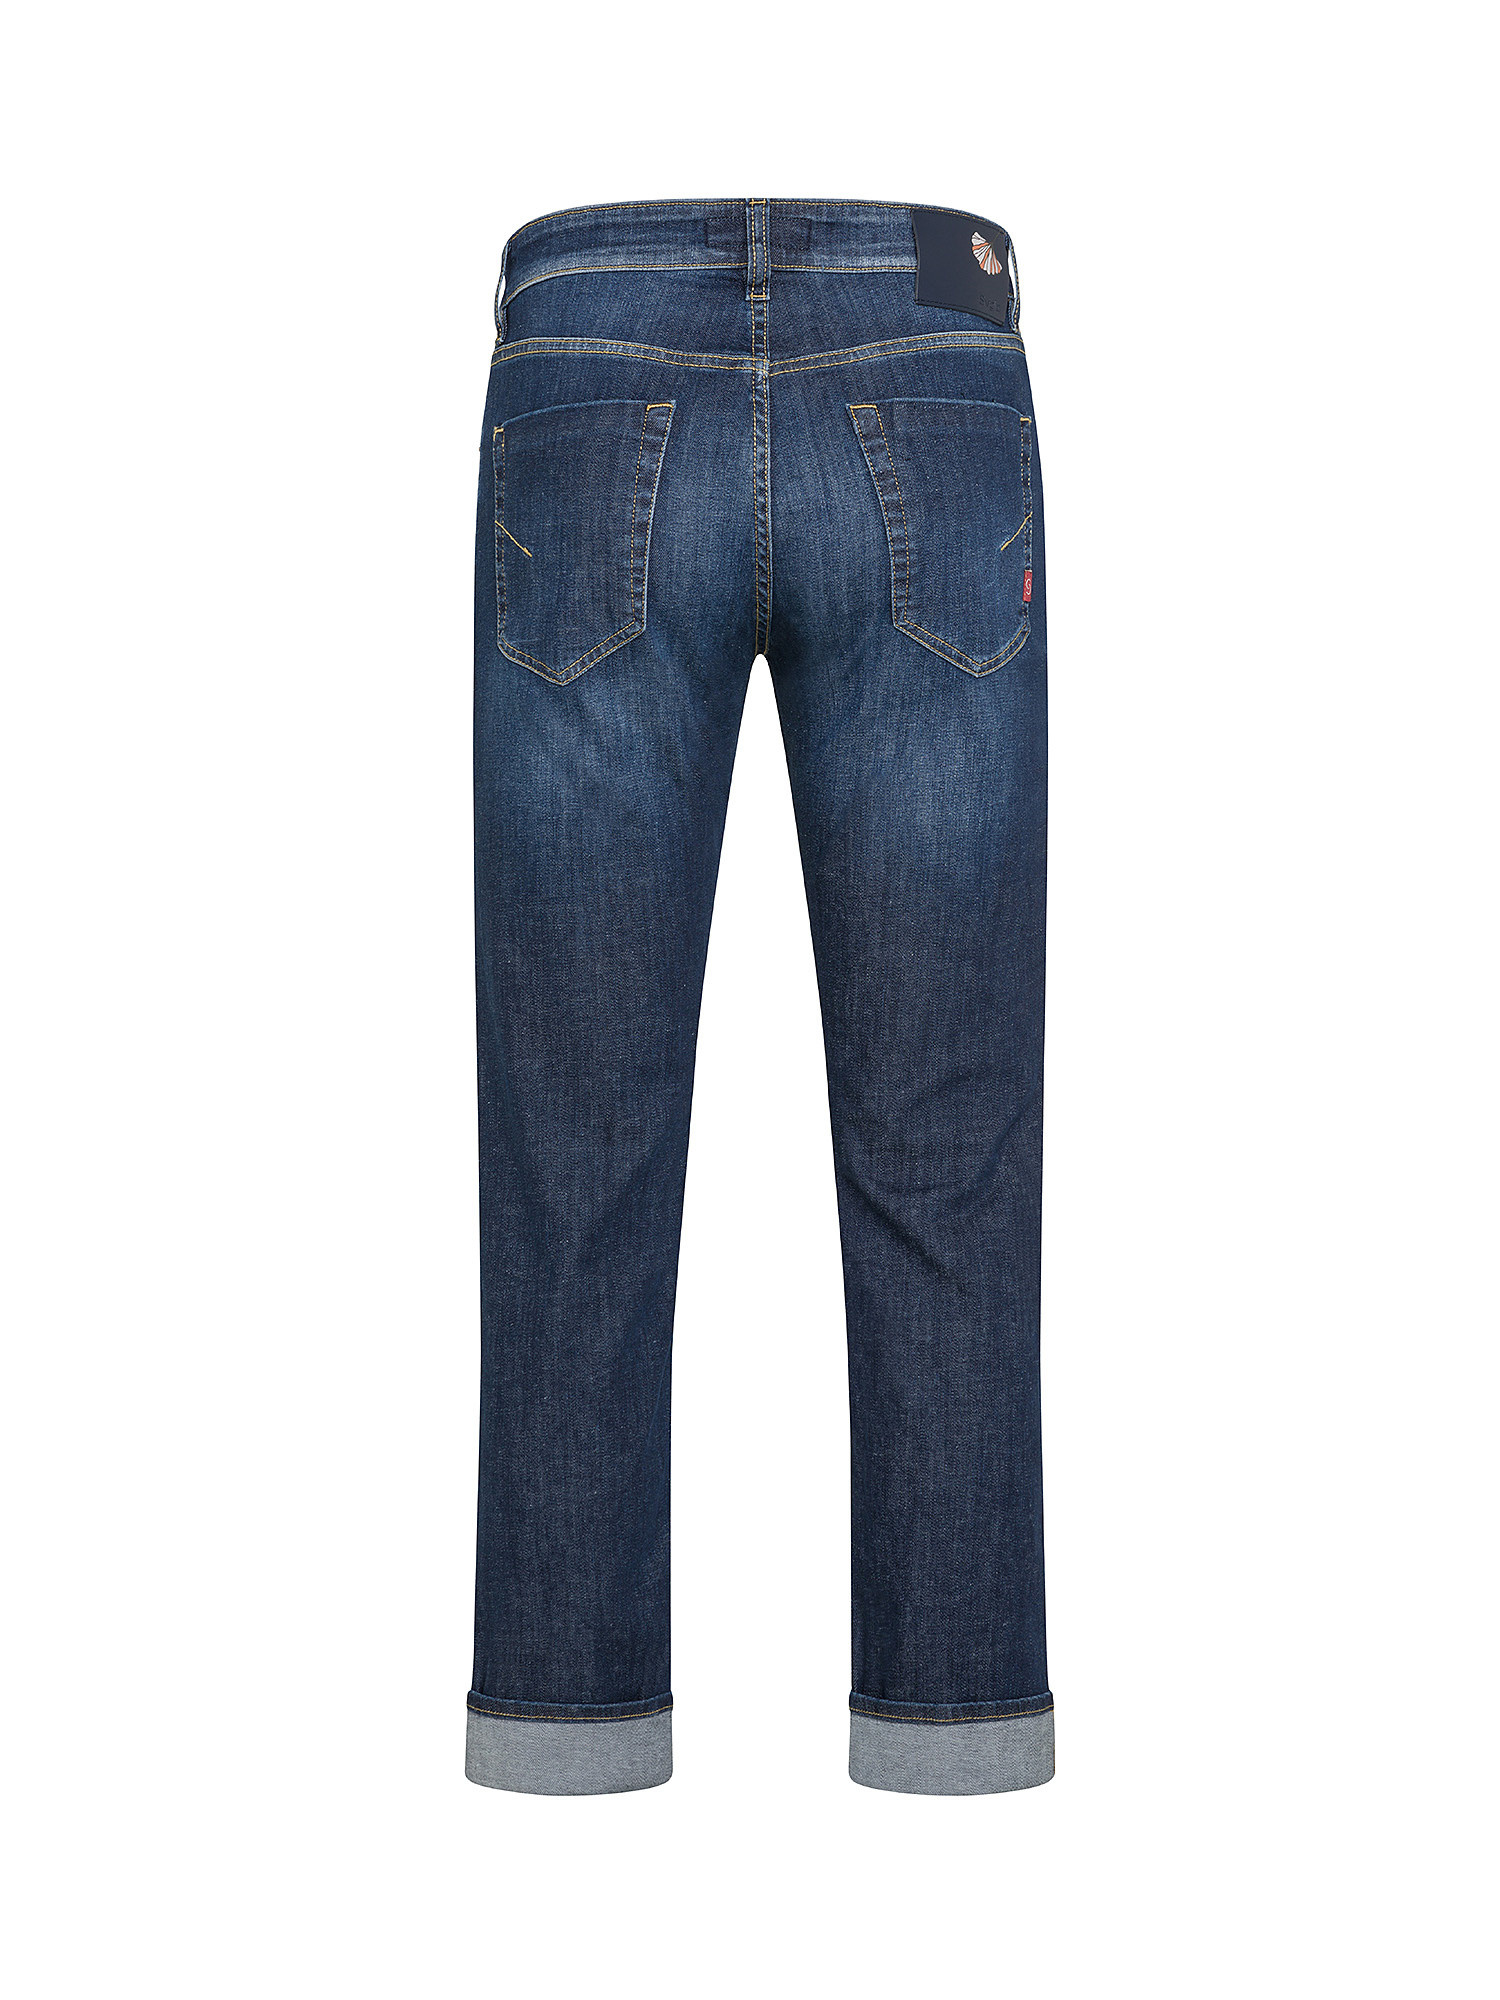 Siviglia - Five pocket jeans, Denim, large image number 1